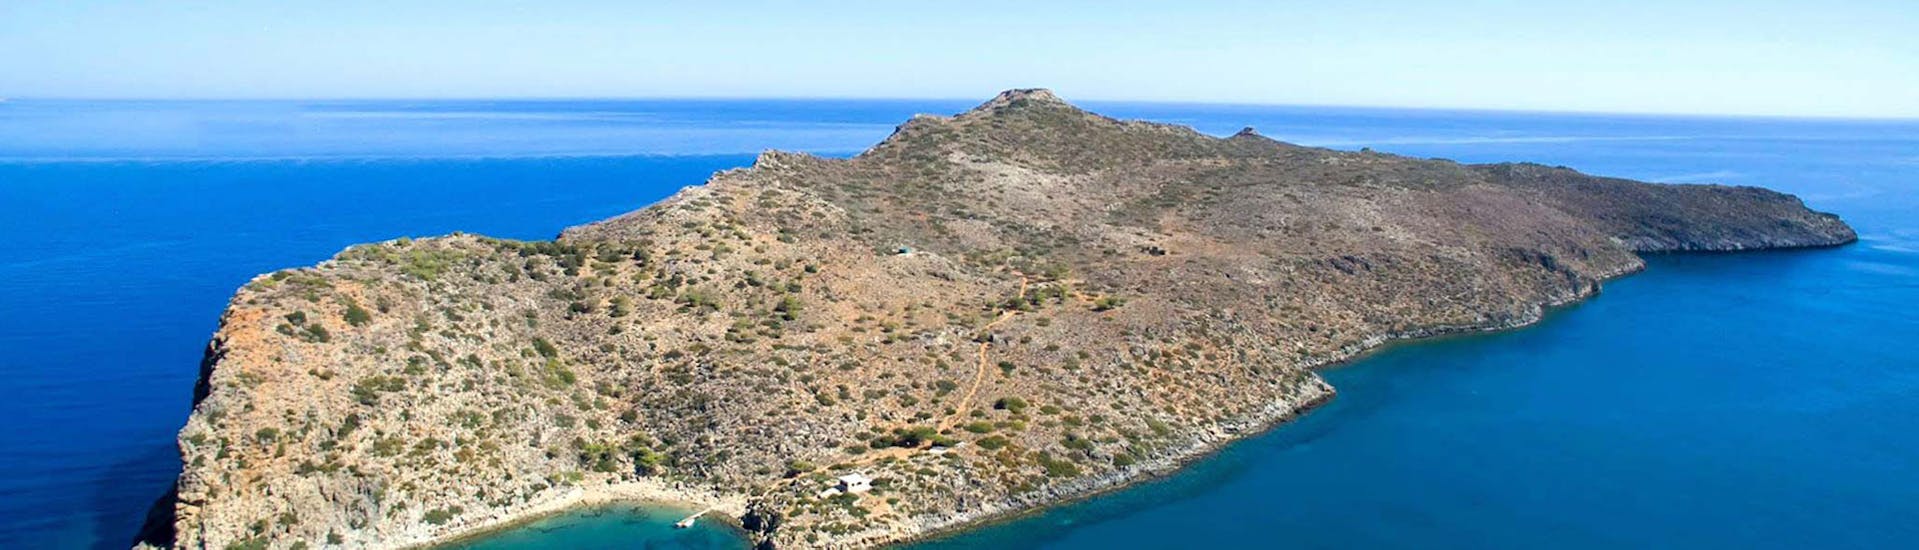 L'une des îles où vous vous rendrez lors de la Balade en bateau de Chania à Agioi Theodoroi & Lazaretta avec Baignade.